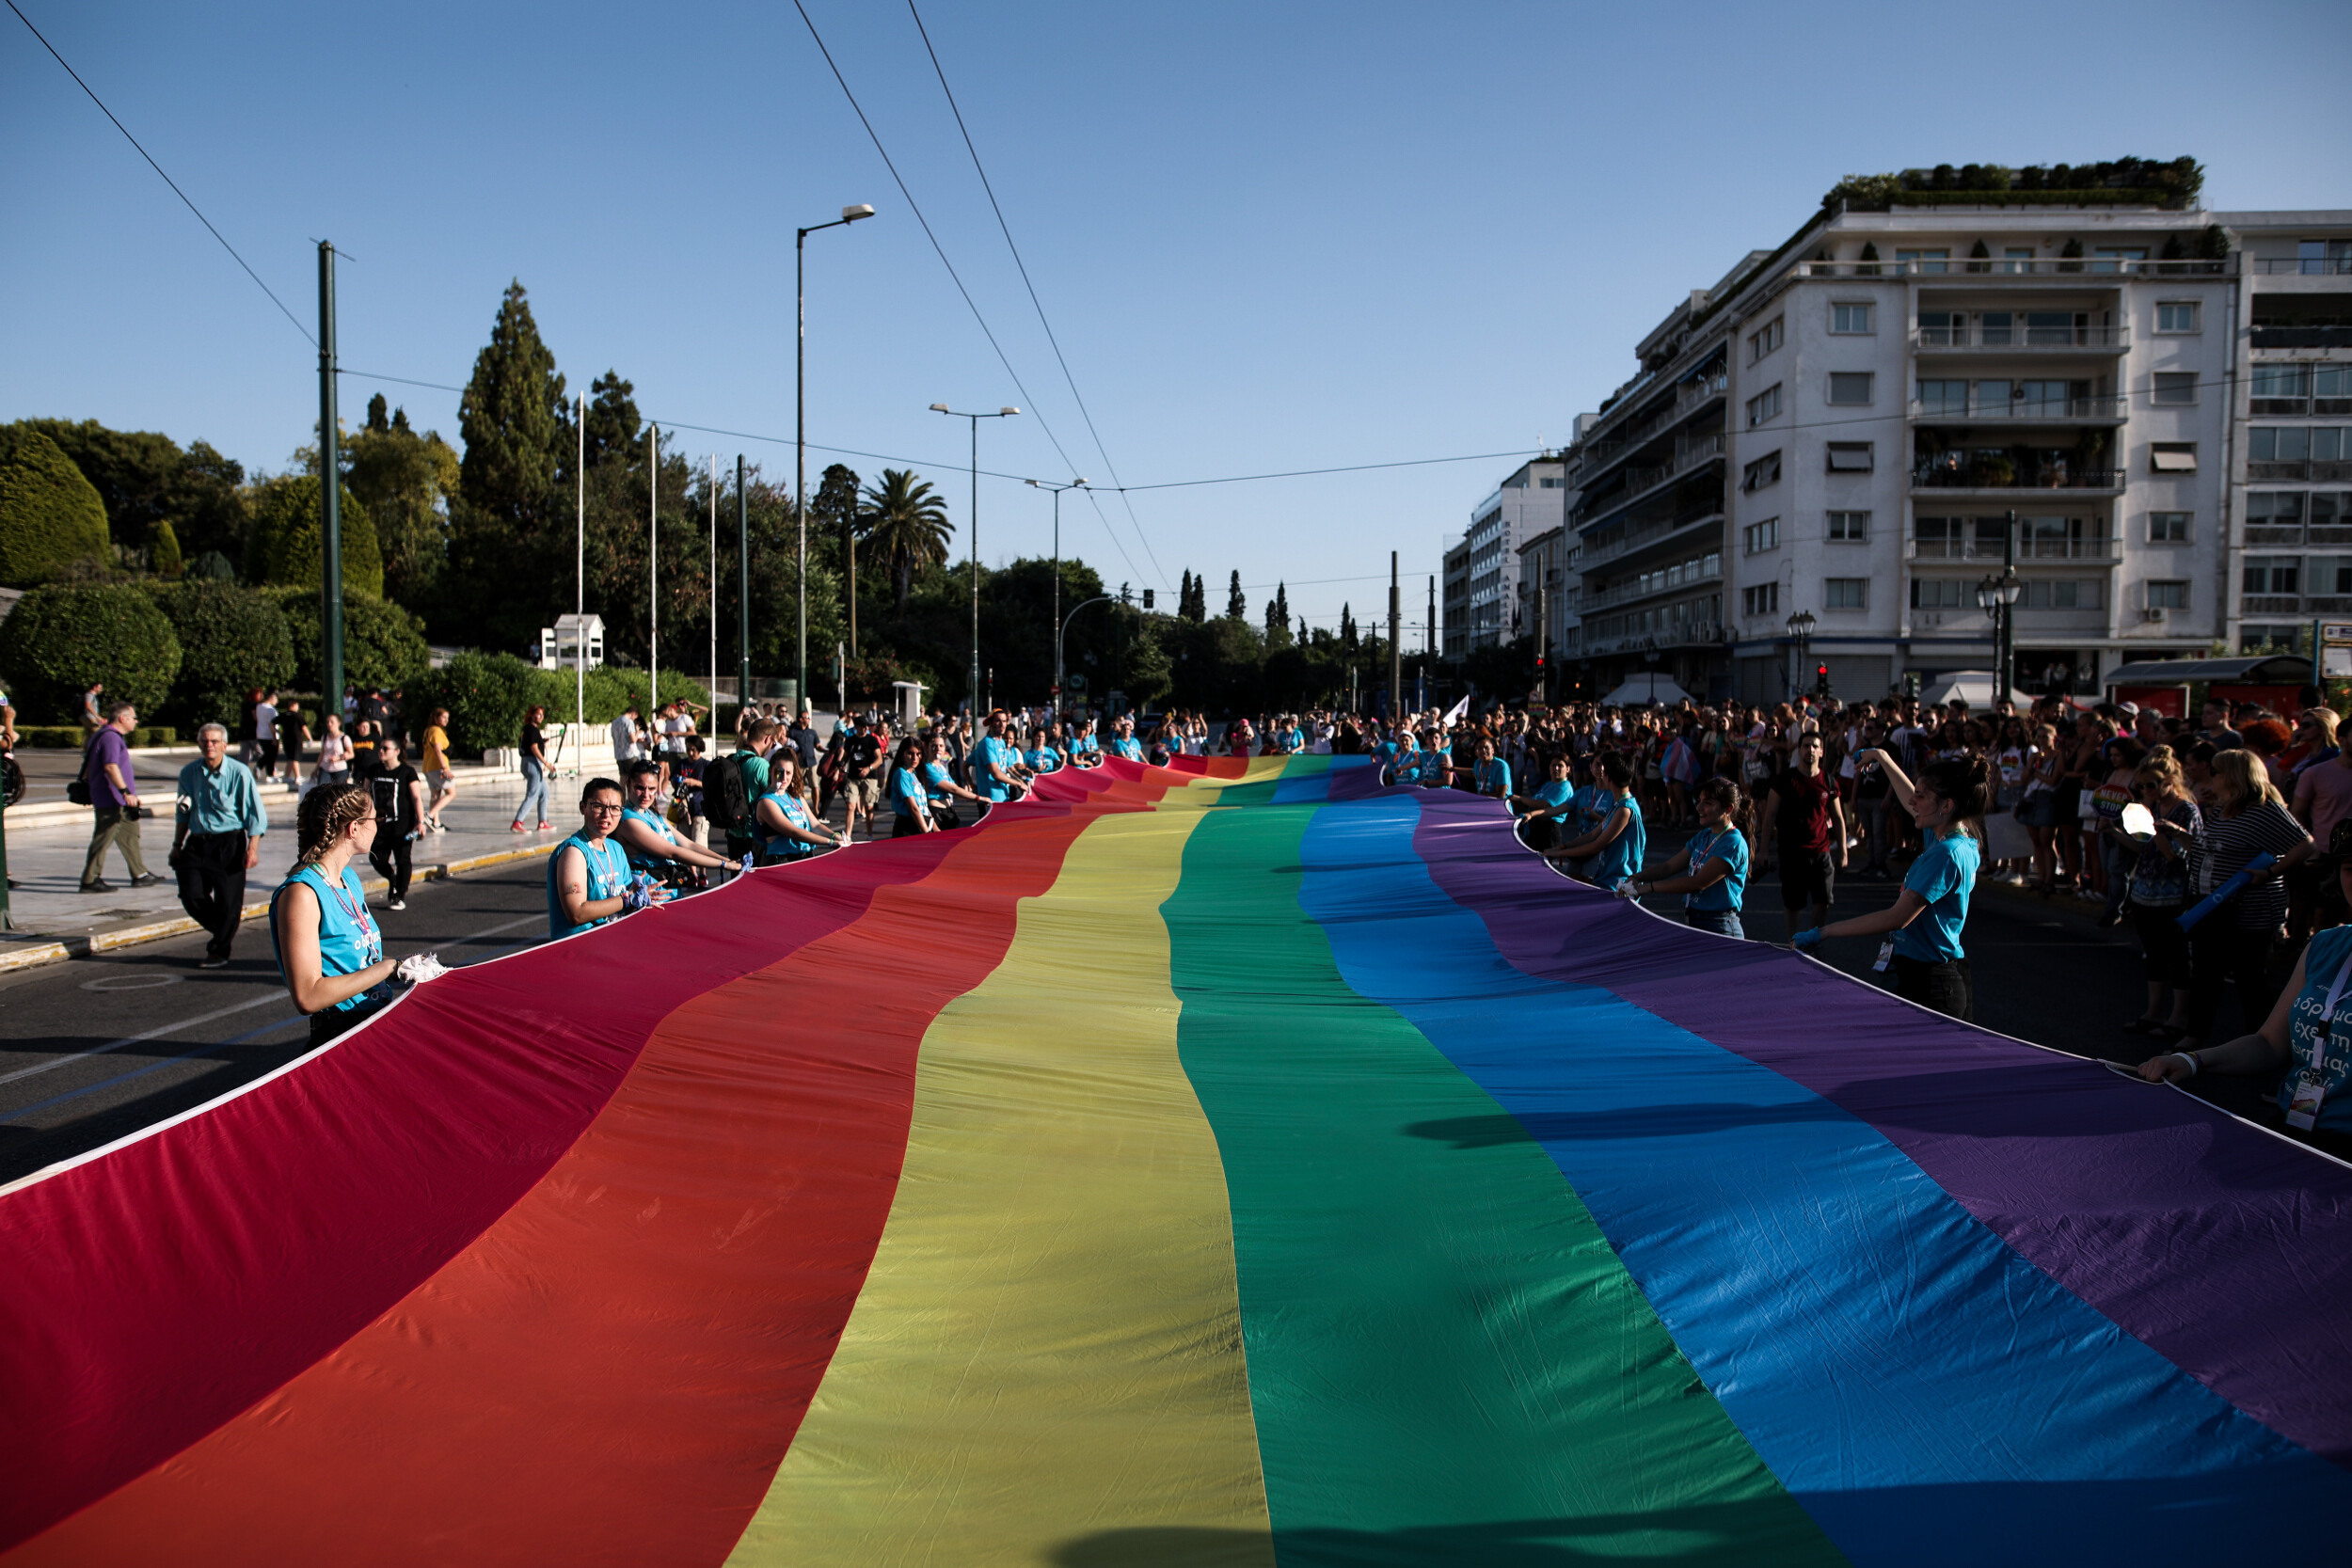 Κύπρος: Σοκάρουν οι καταγγελίες – Ιερείς έκαναν εξορκισμούς σε ΛΟΑΤΚΙ άτομα